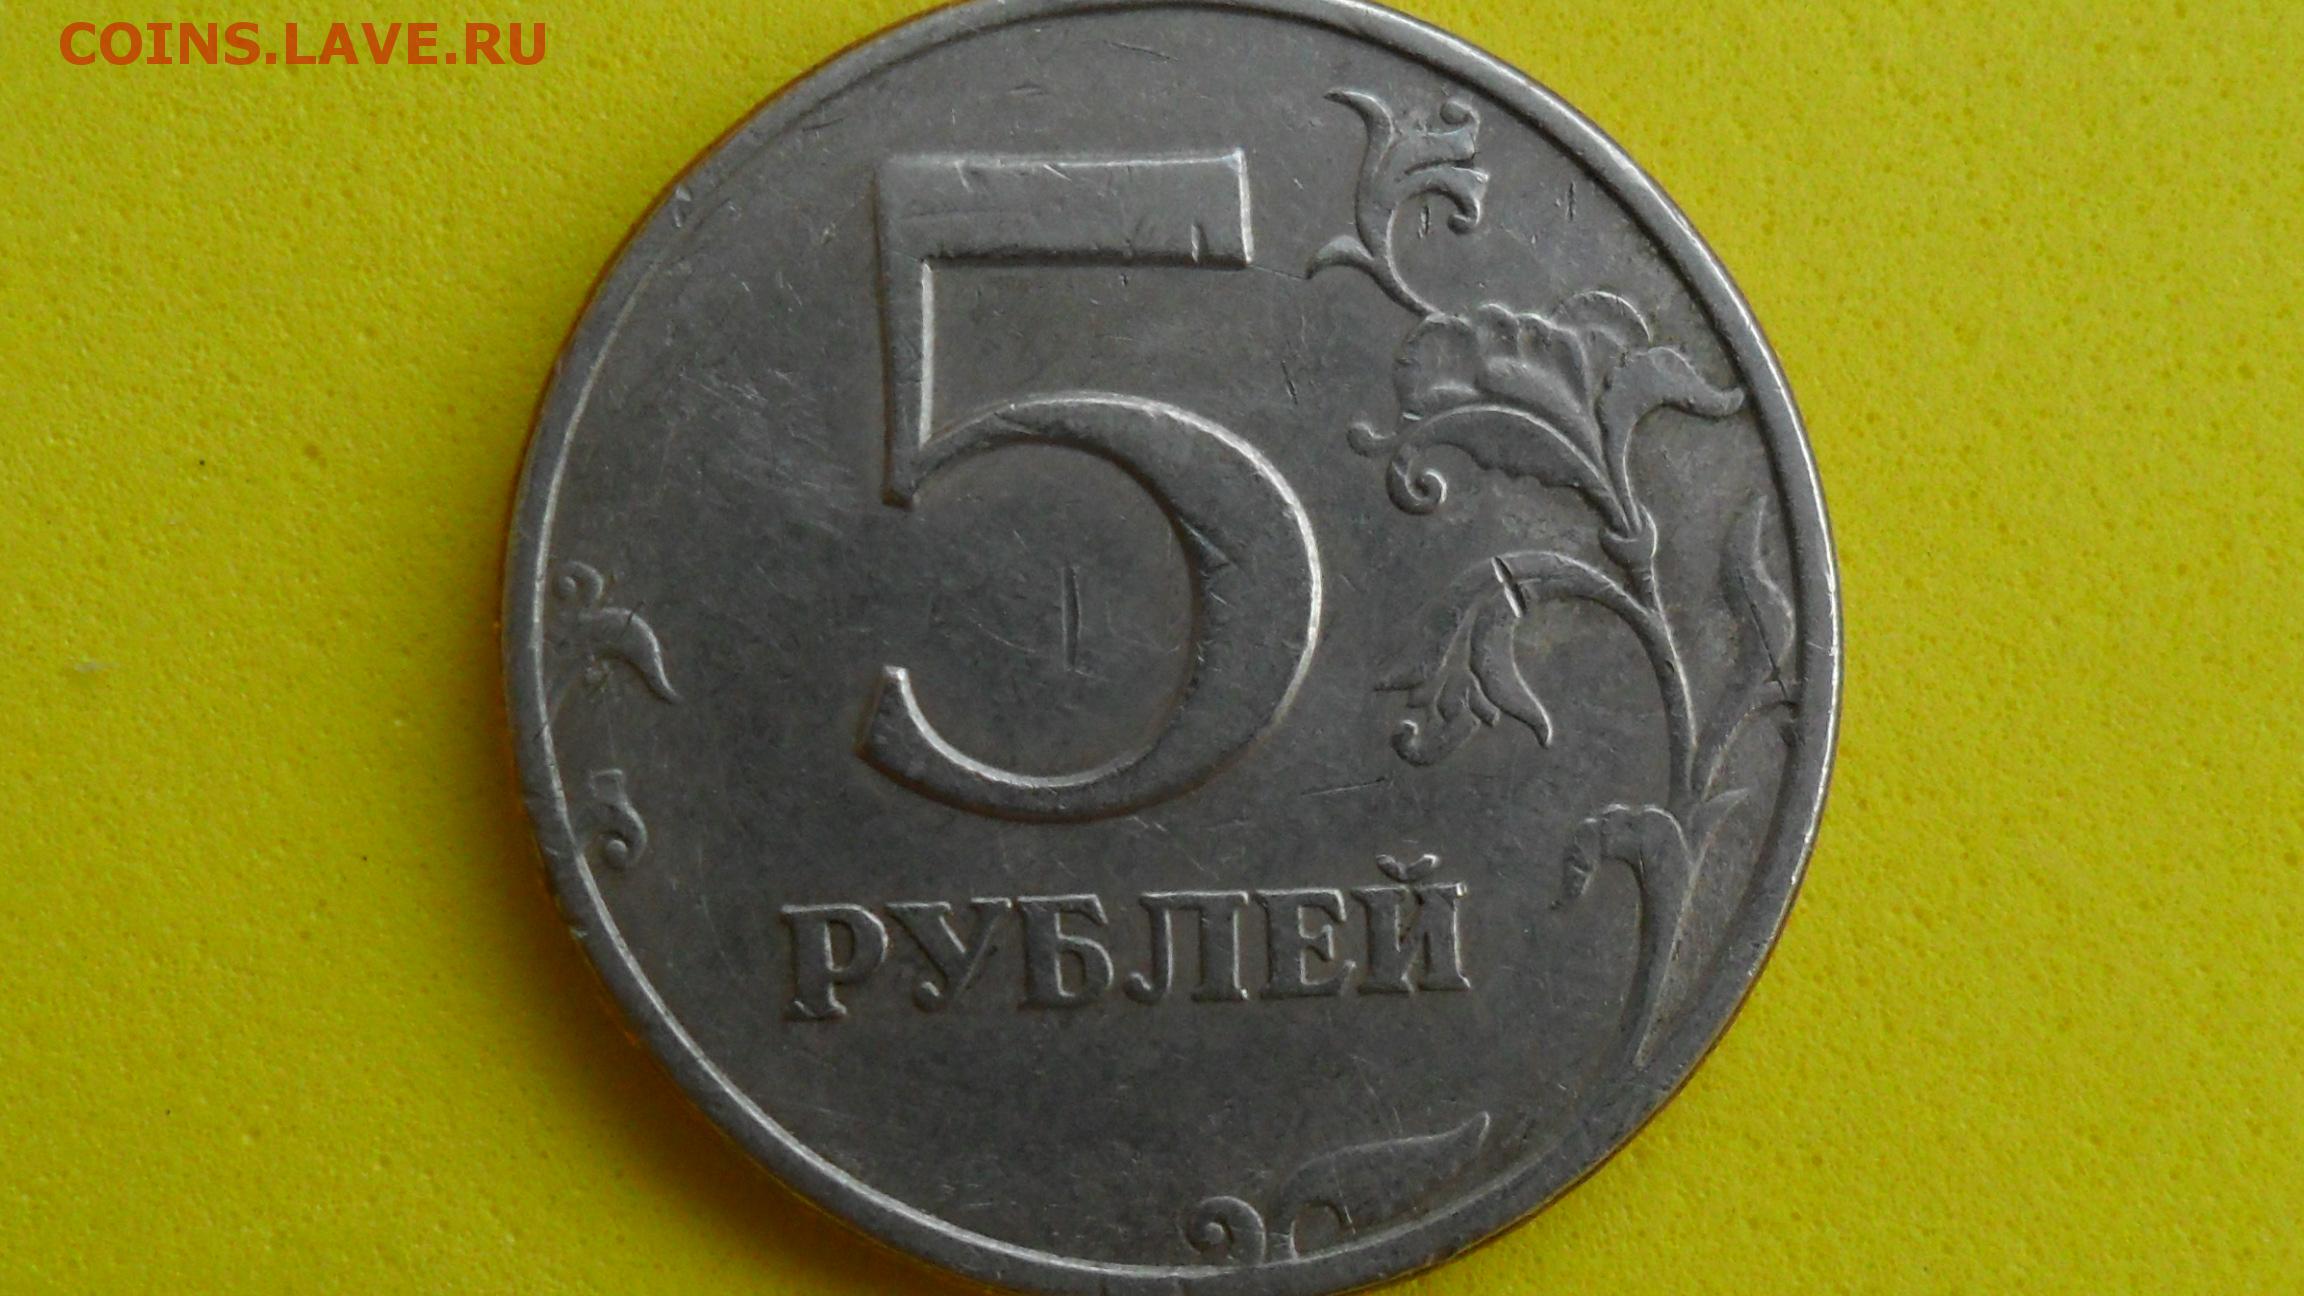 Выпустили 5 рублей. 5 Рублей 1997 г. СПМД - шт. 2.23. 5 Руб. 1997 г. СПМД шт.2.23. Редкая 5 руб.1997 года СПМД. Шт.2.23. 5 Рублей 1997 ММД.